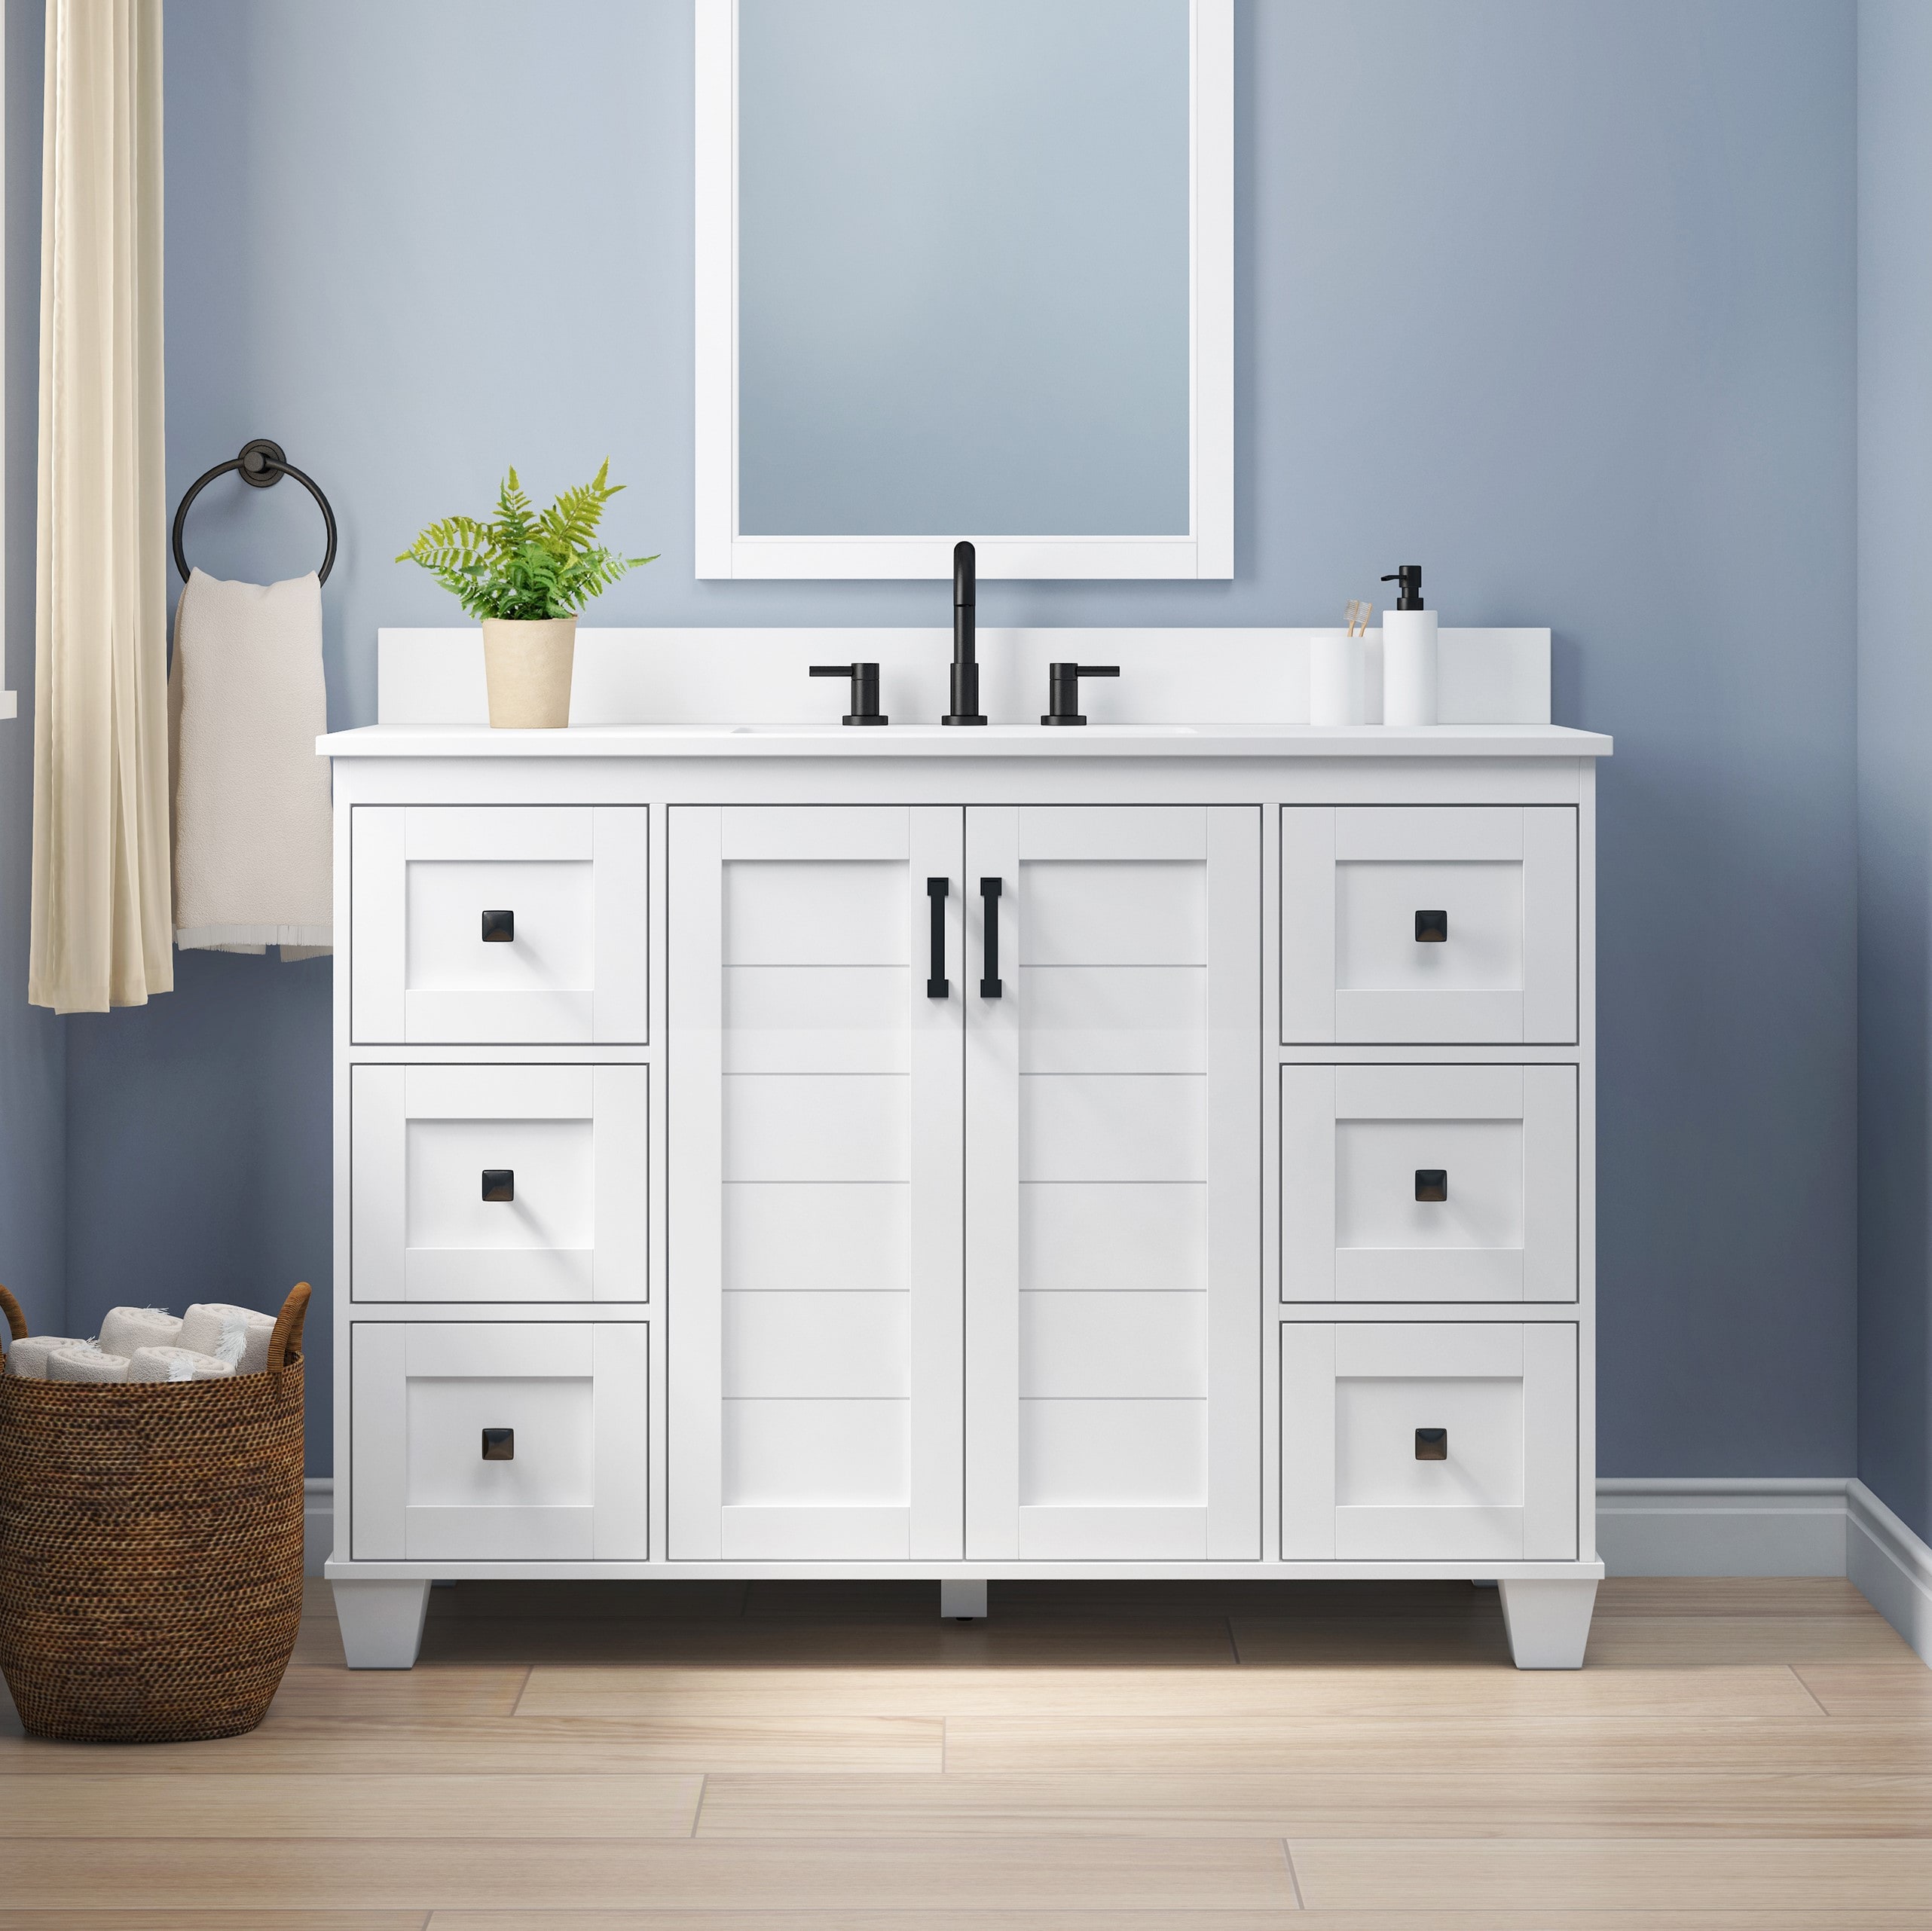 allen + roth rigsby 48-in white undermount single sink bathroom